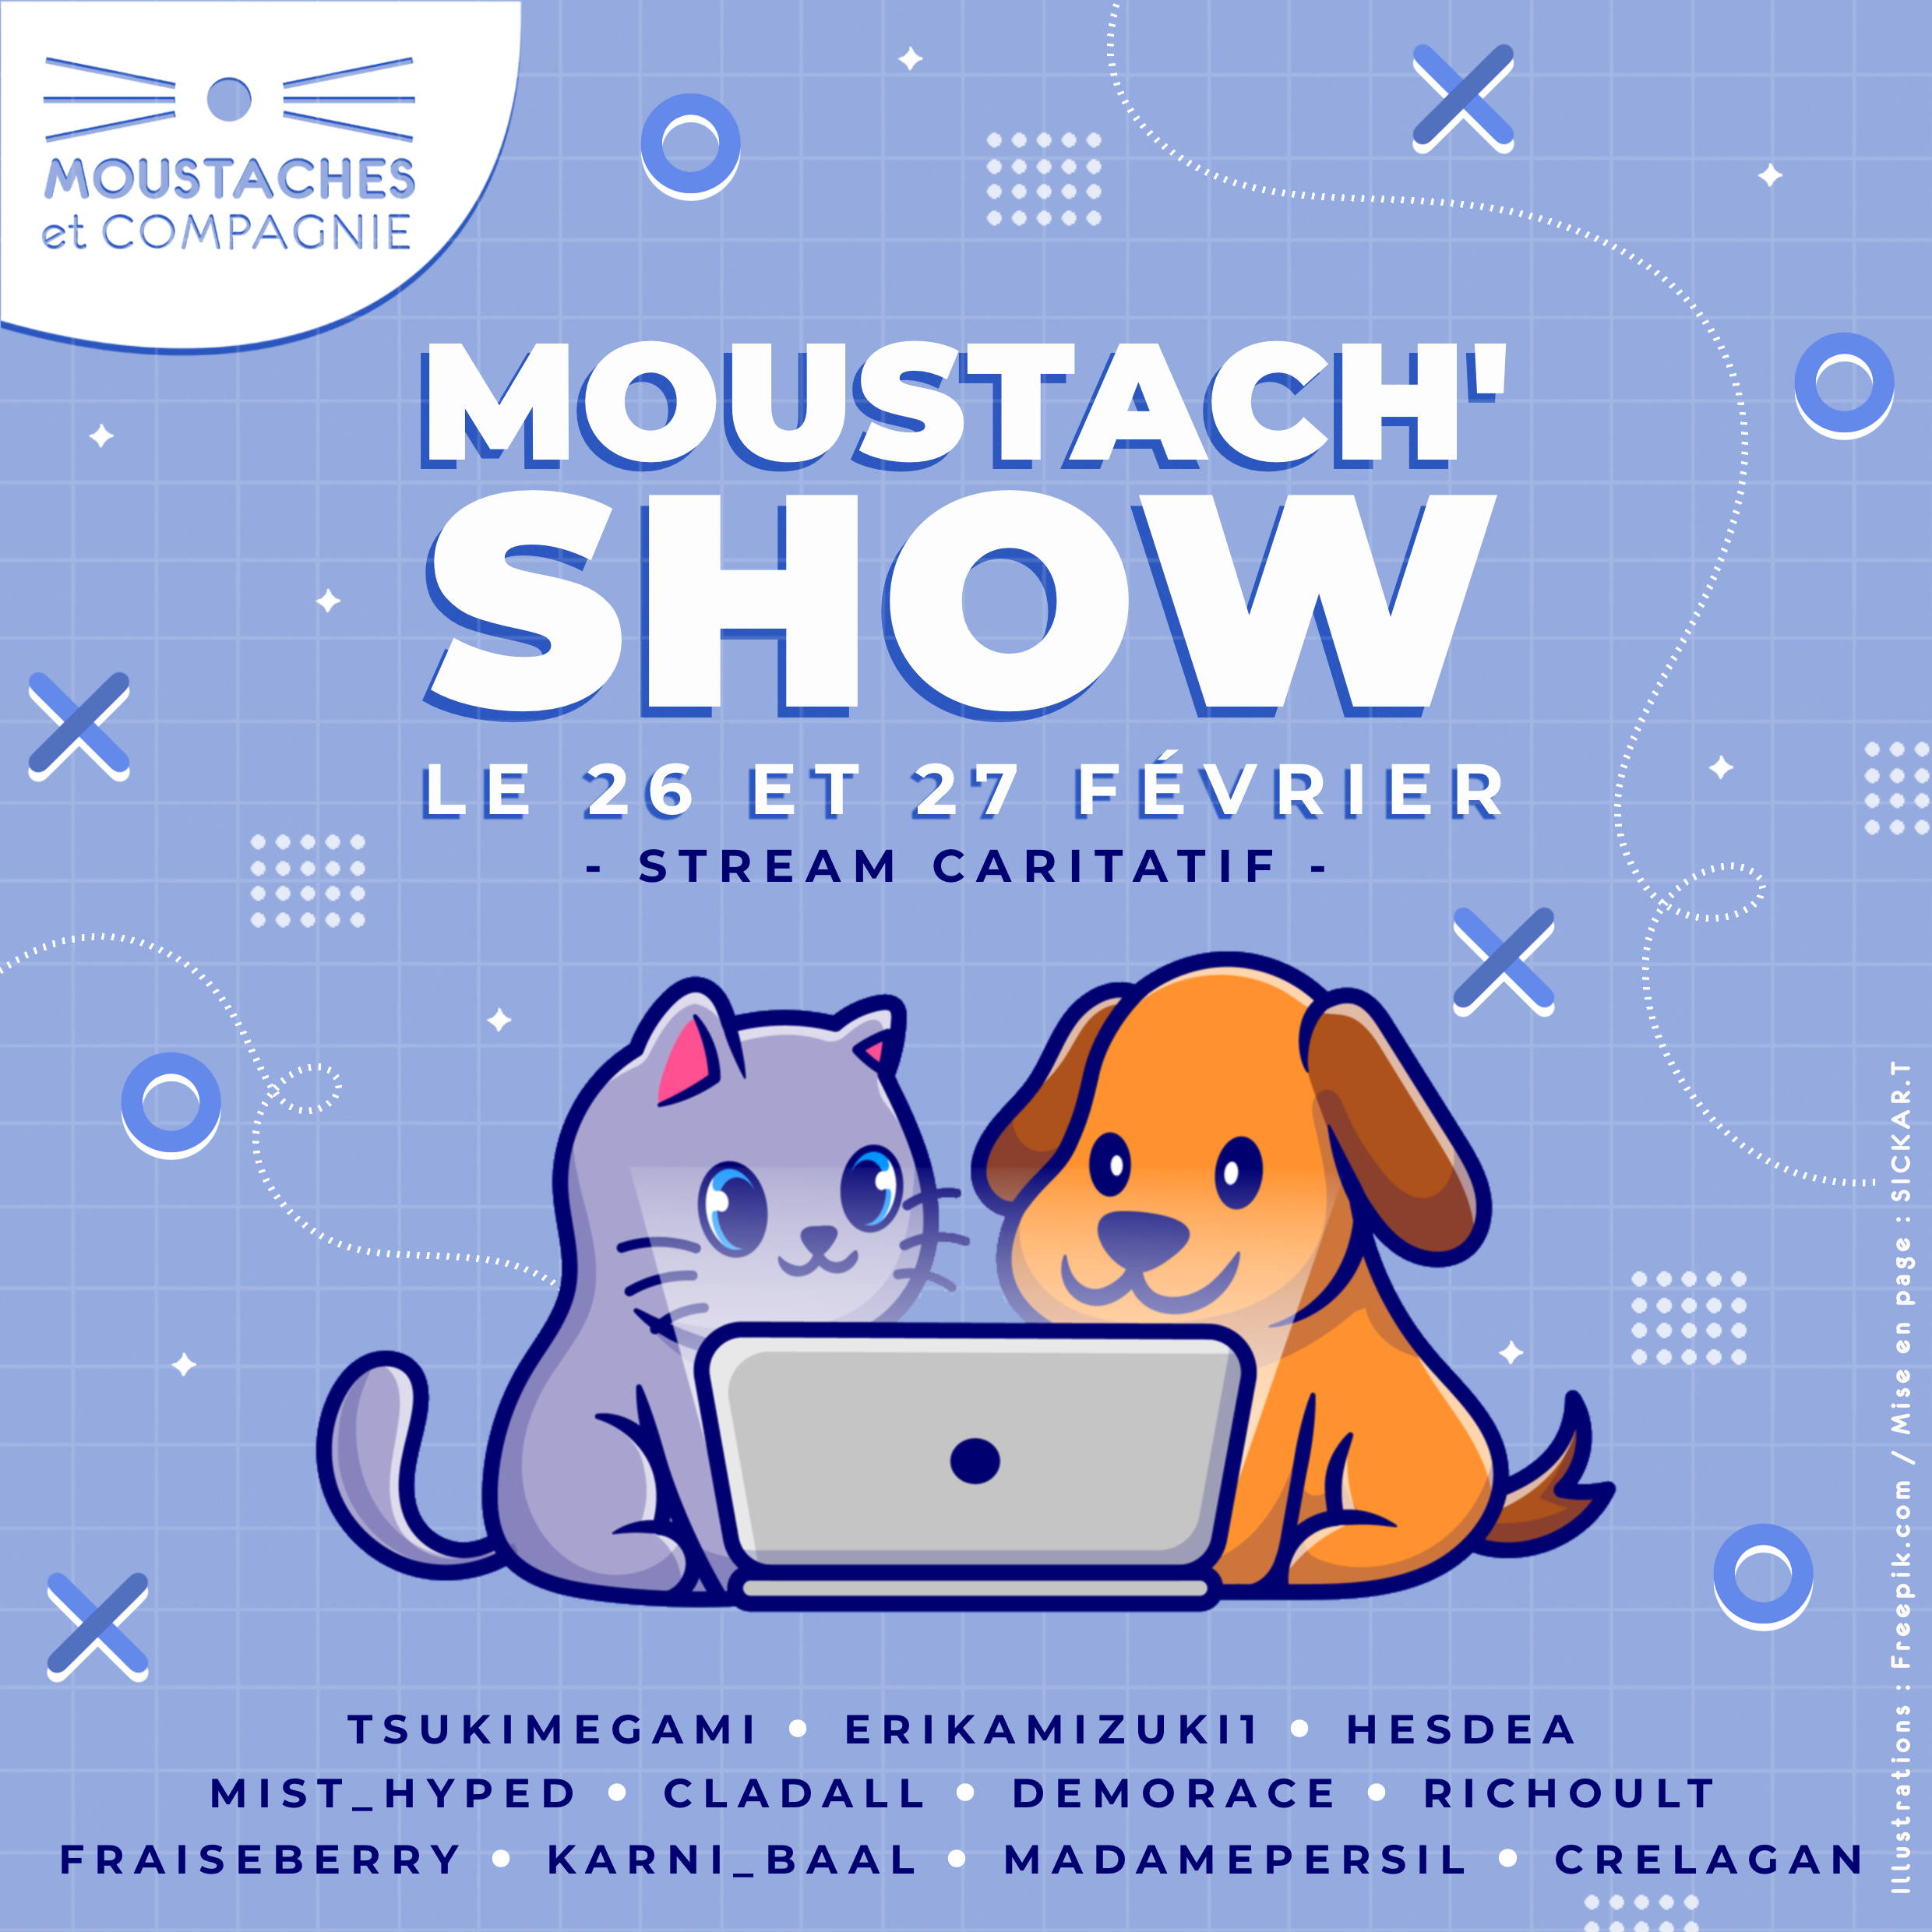 Moustach show